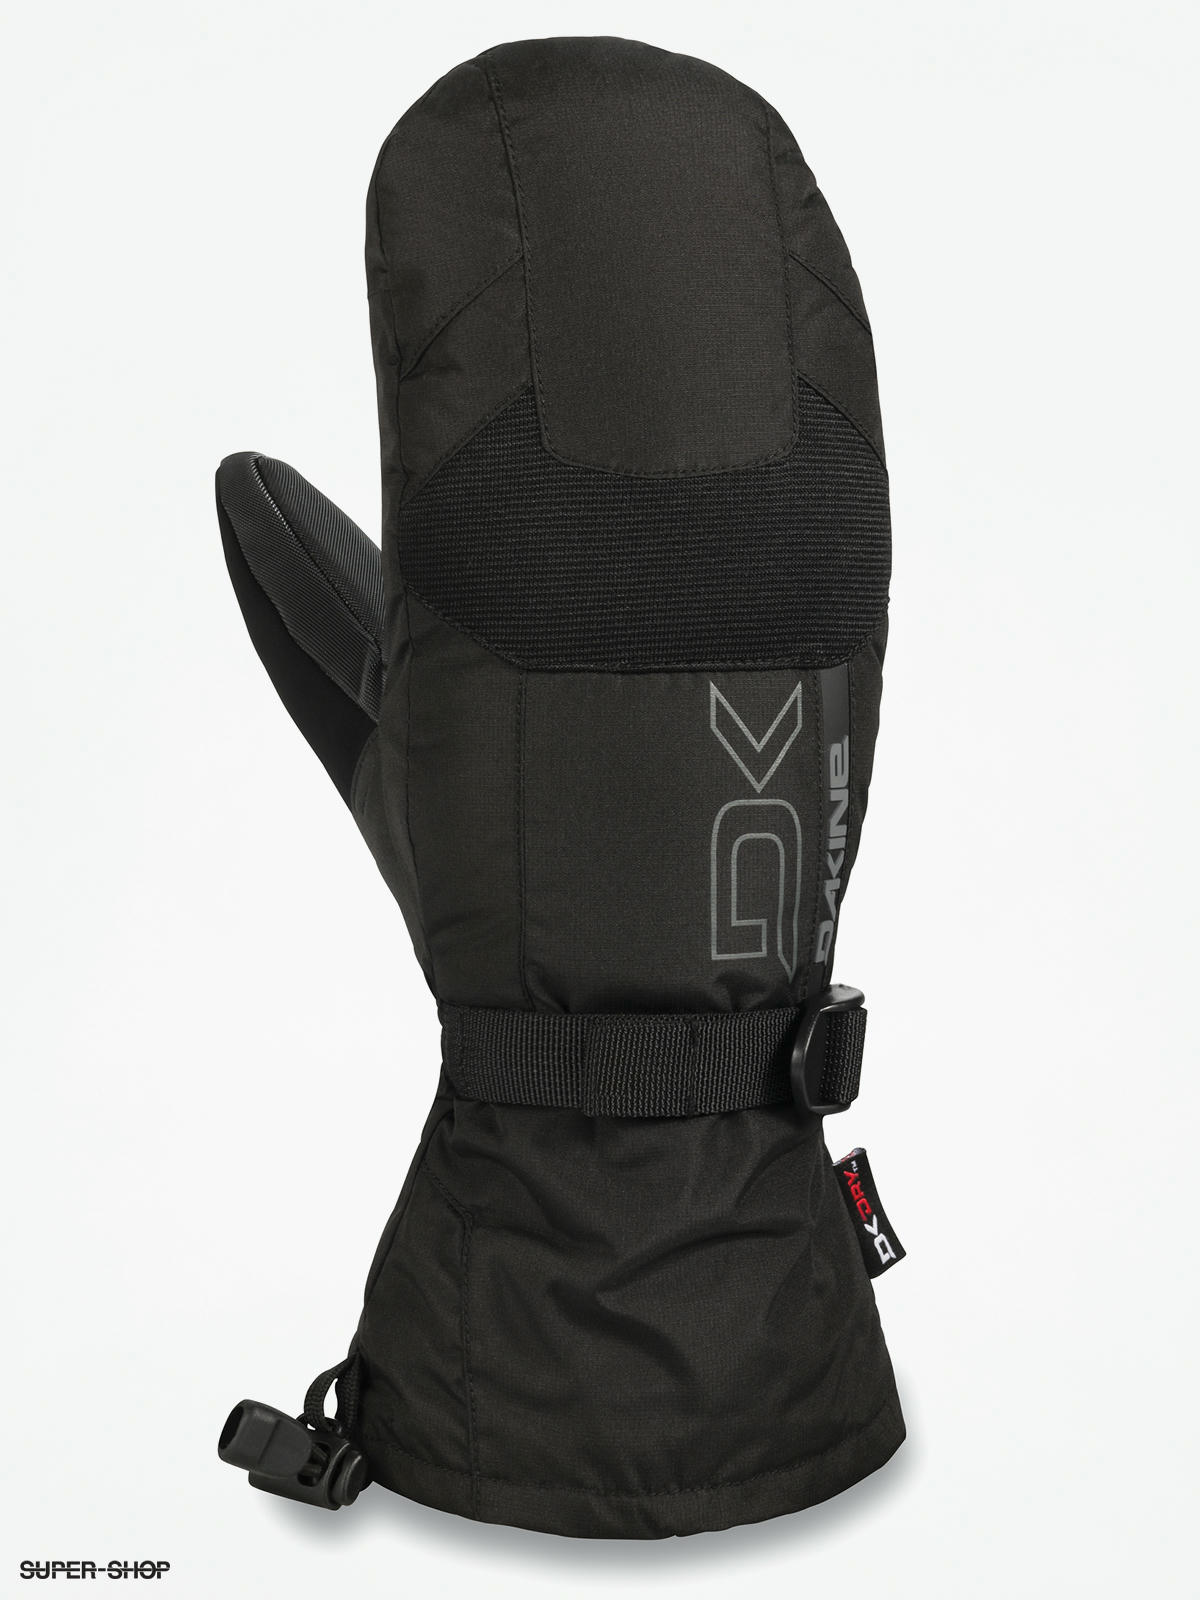 Burton Profile Mitten Gloves (true black/clover green/stout white)